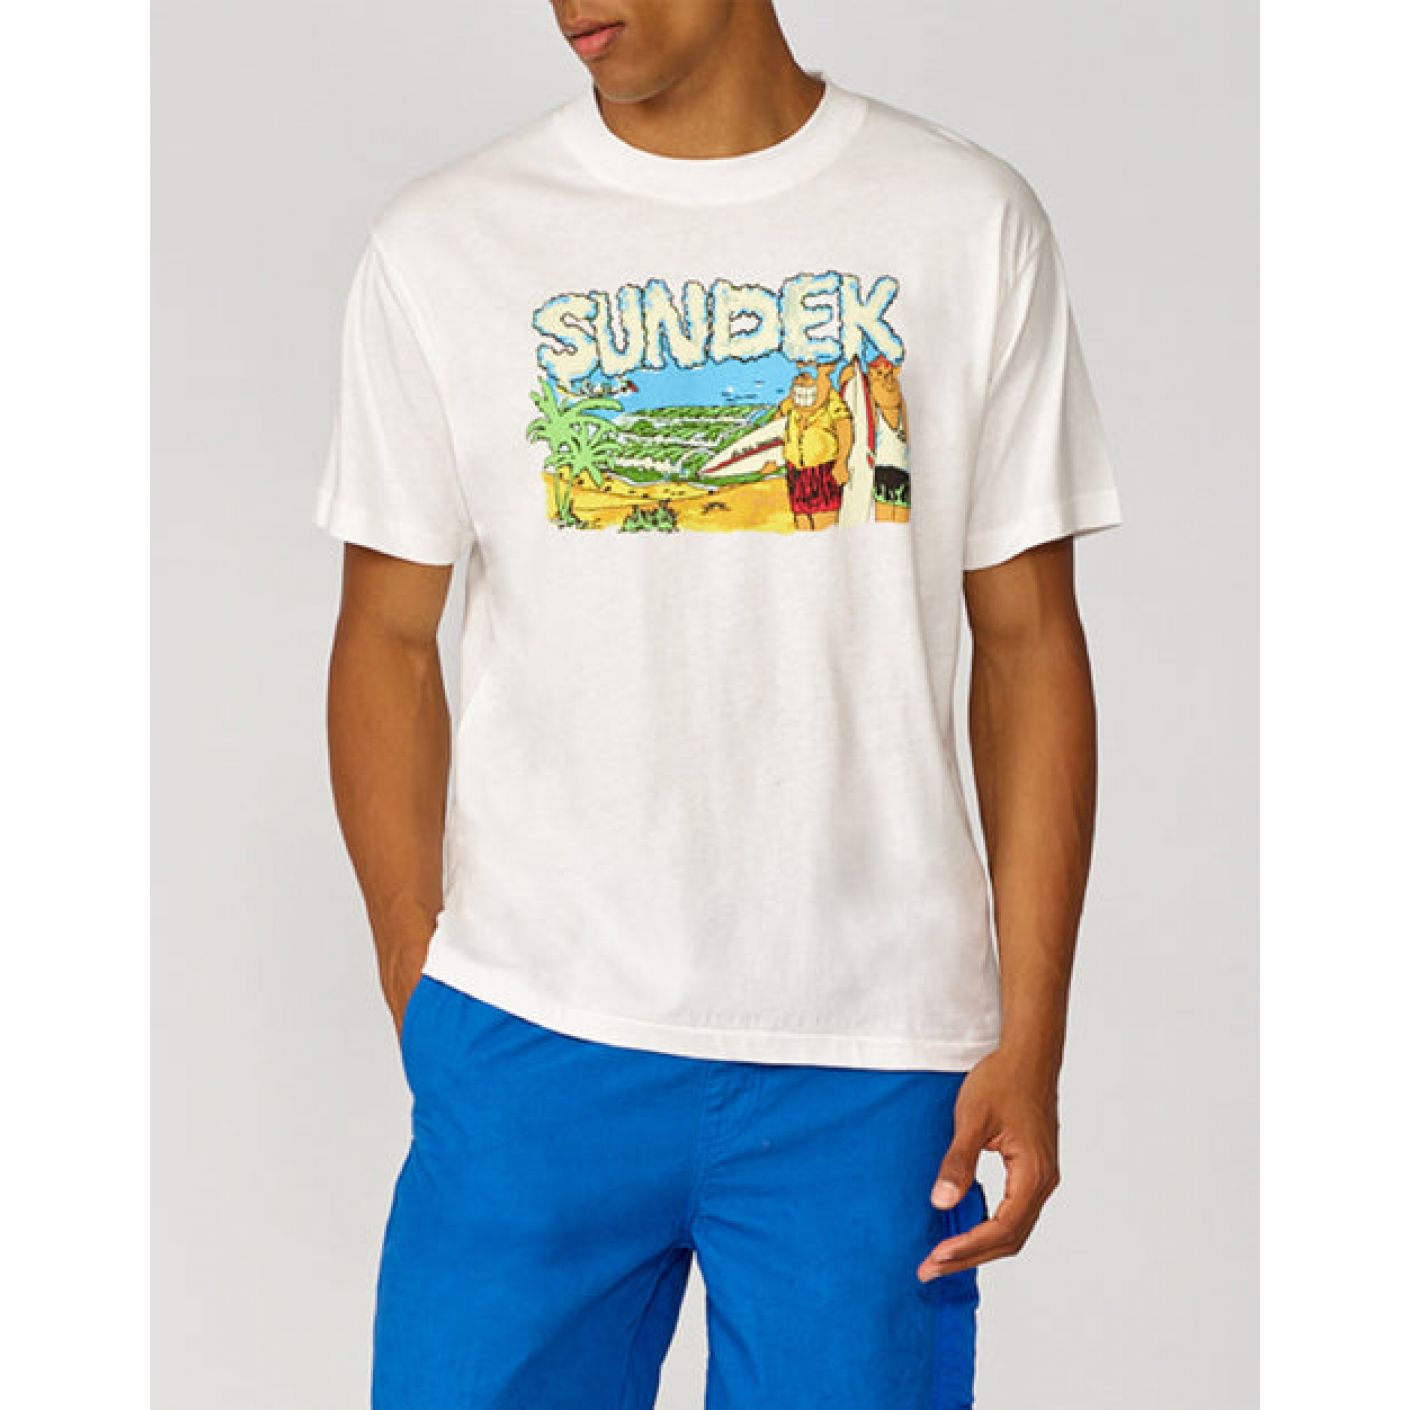 Sundek - T-shirt 